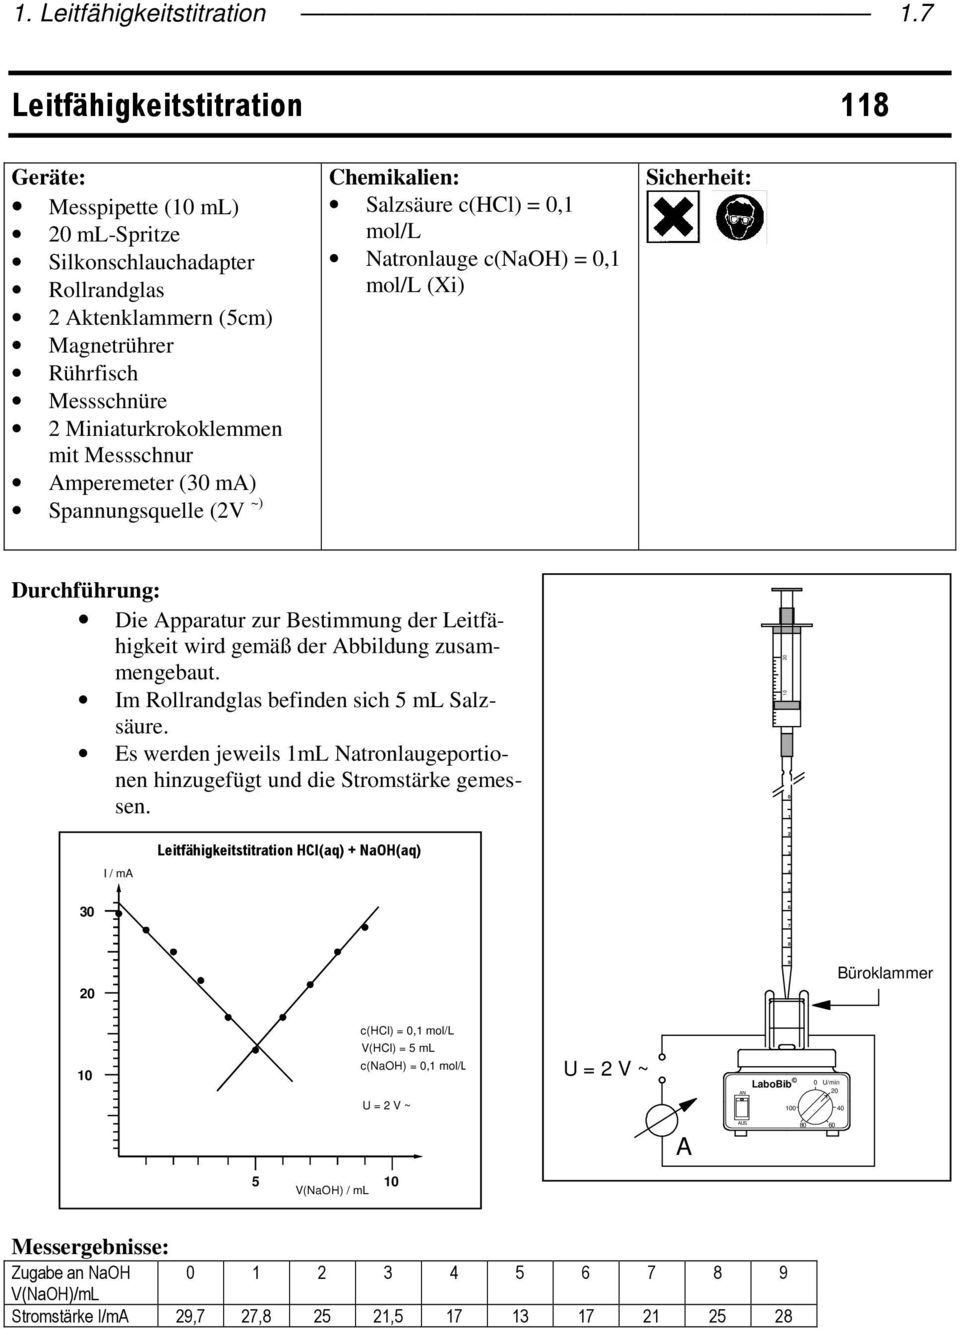 mperemeter (30 m) Spannungsquee (2V ~) Chemikaien: Sazsäure c(hc) 0, mo/l Natronauge c(naoh) 0, mo/l (Xi) Sicherheit: Durchführung: Die pparatur zur Bestimmung der Leitfähigkeit wird gemäß der